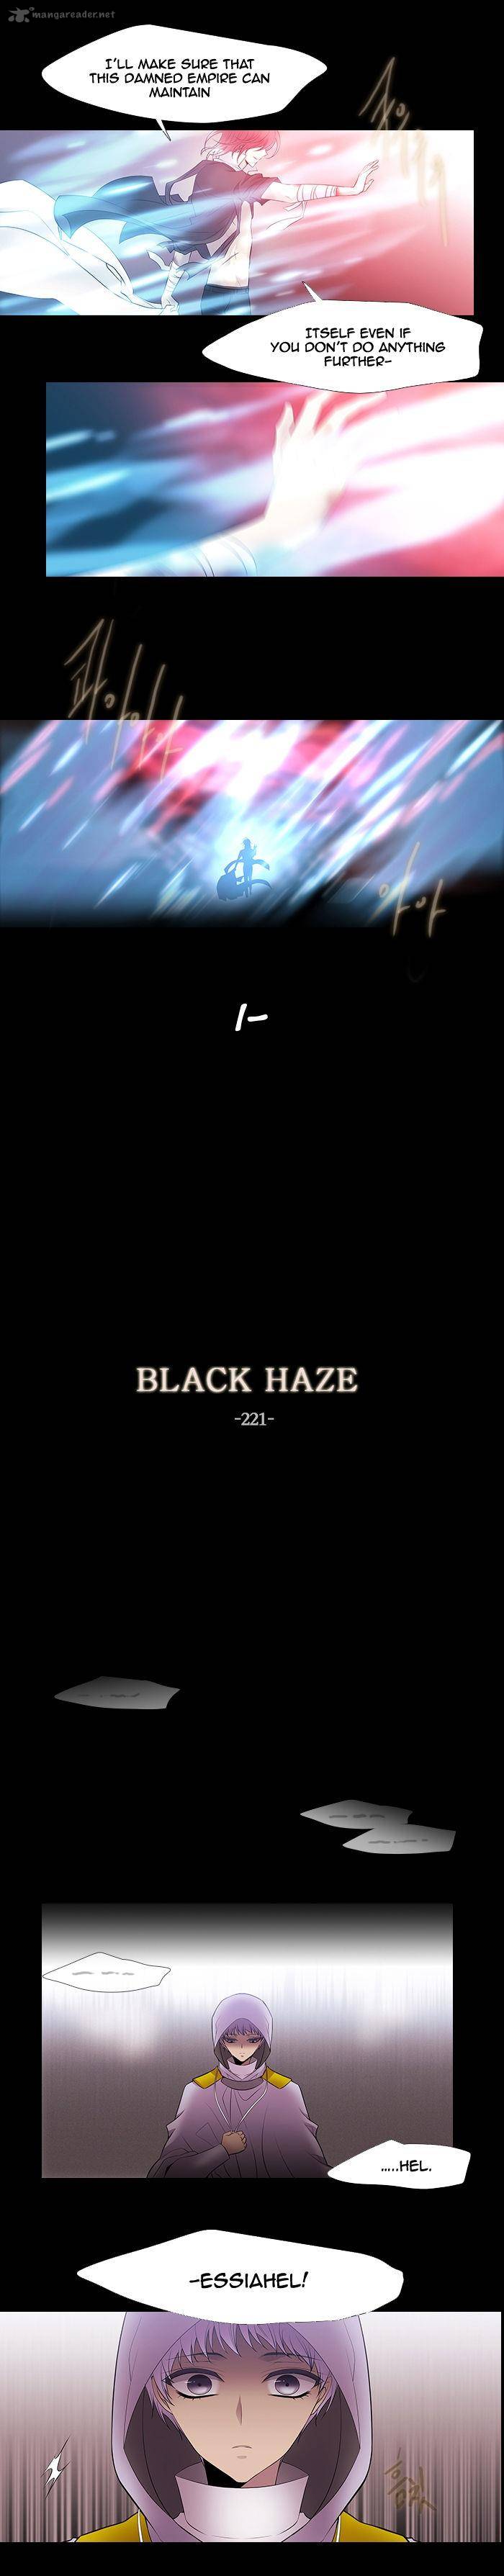 black_haze_221_7